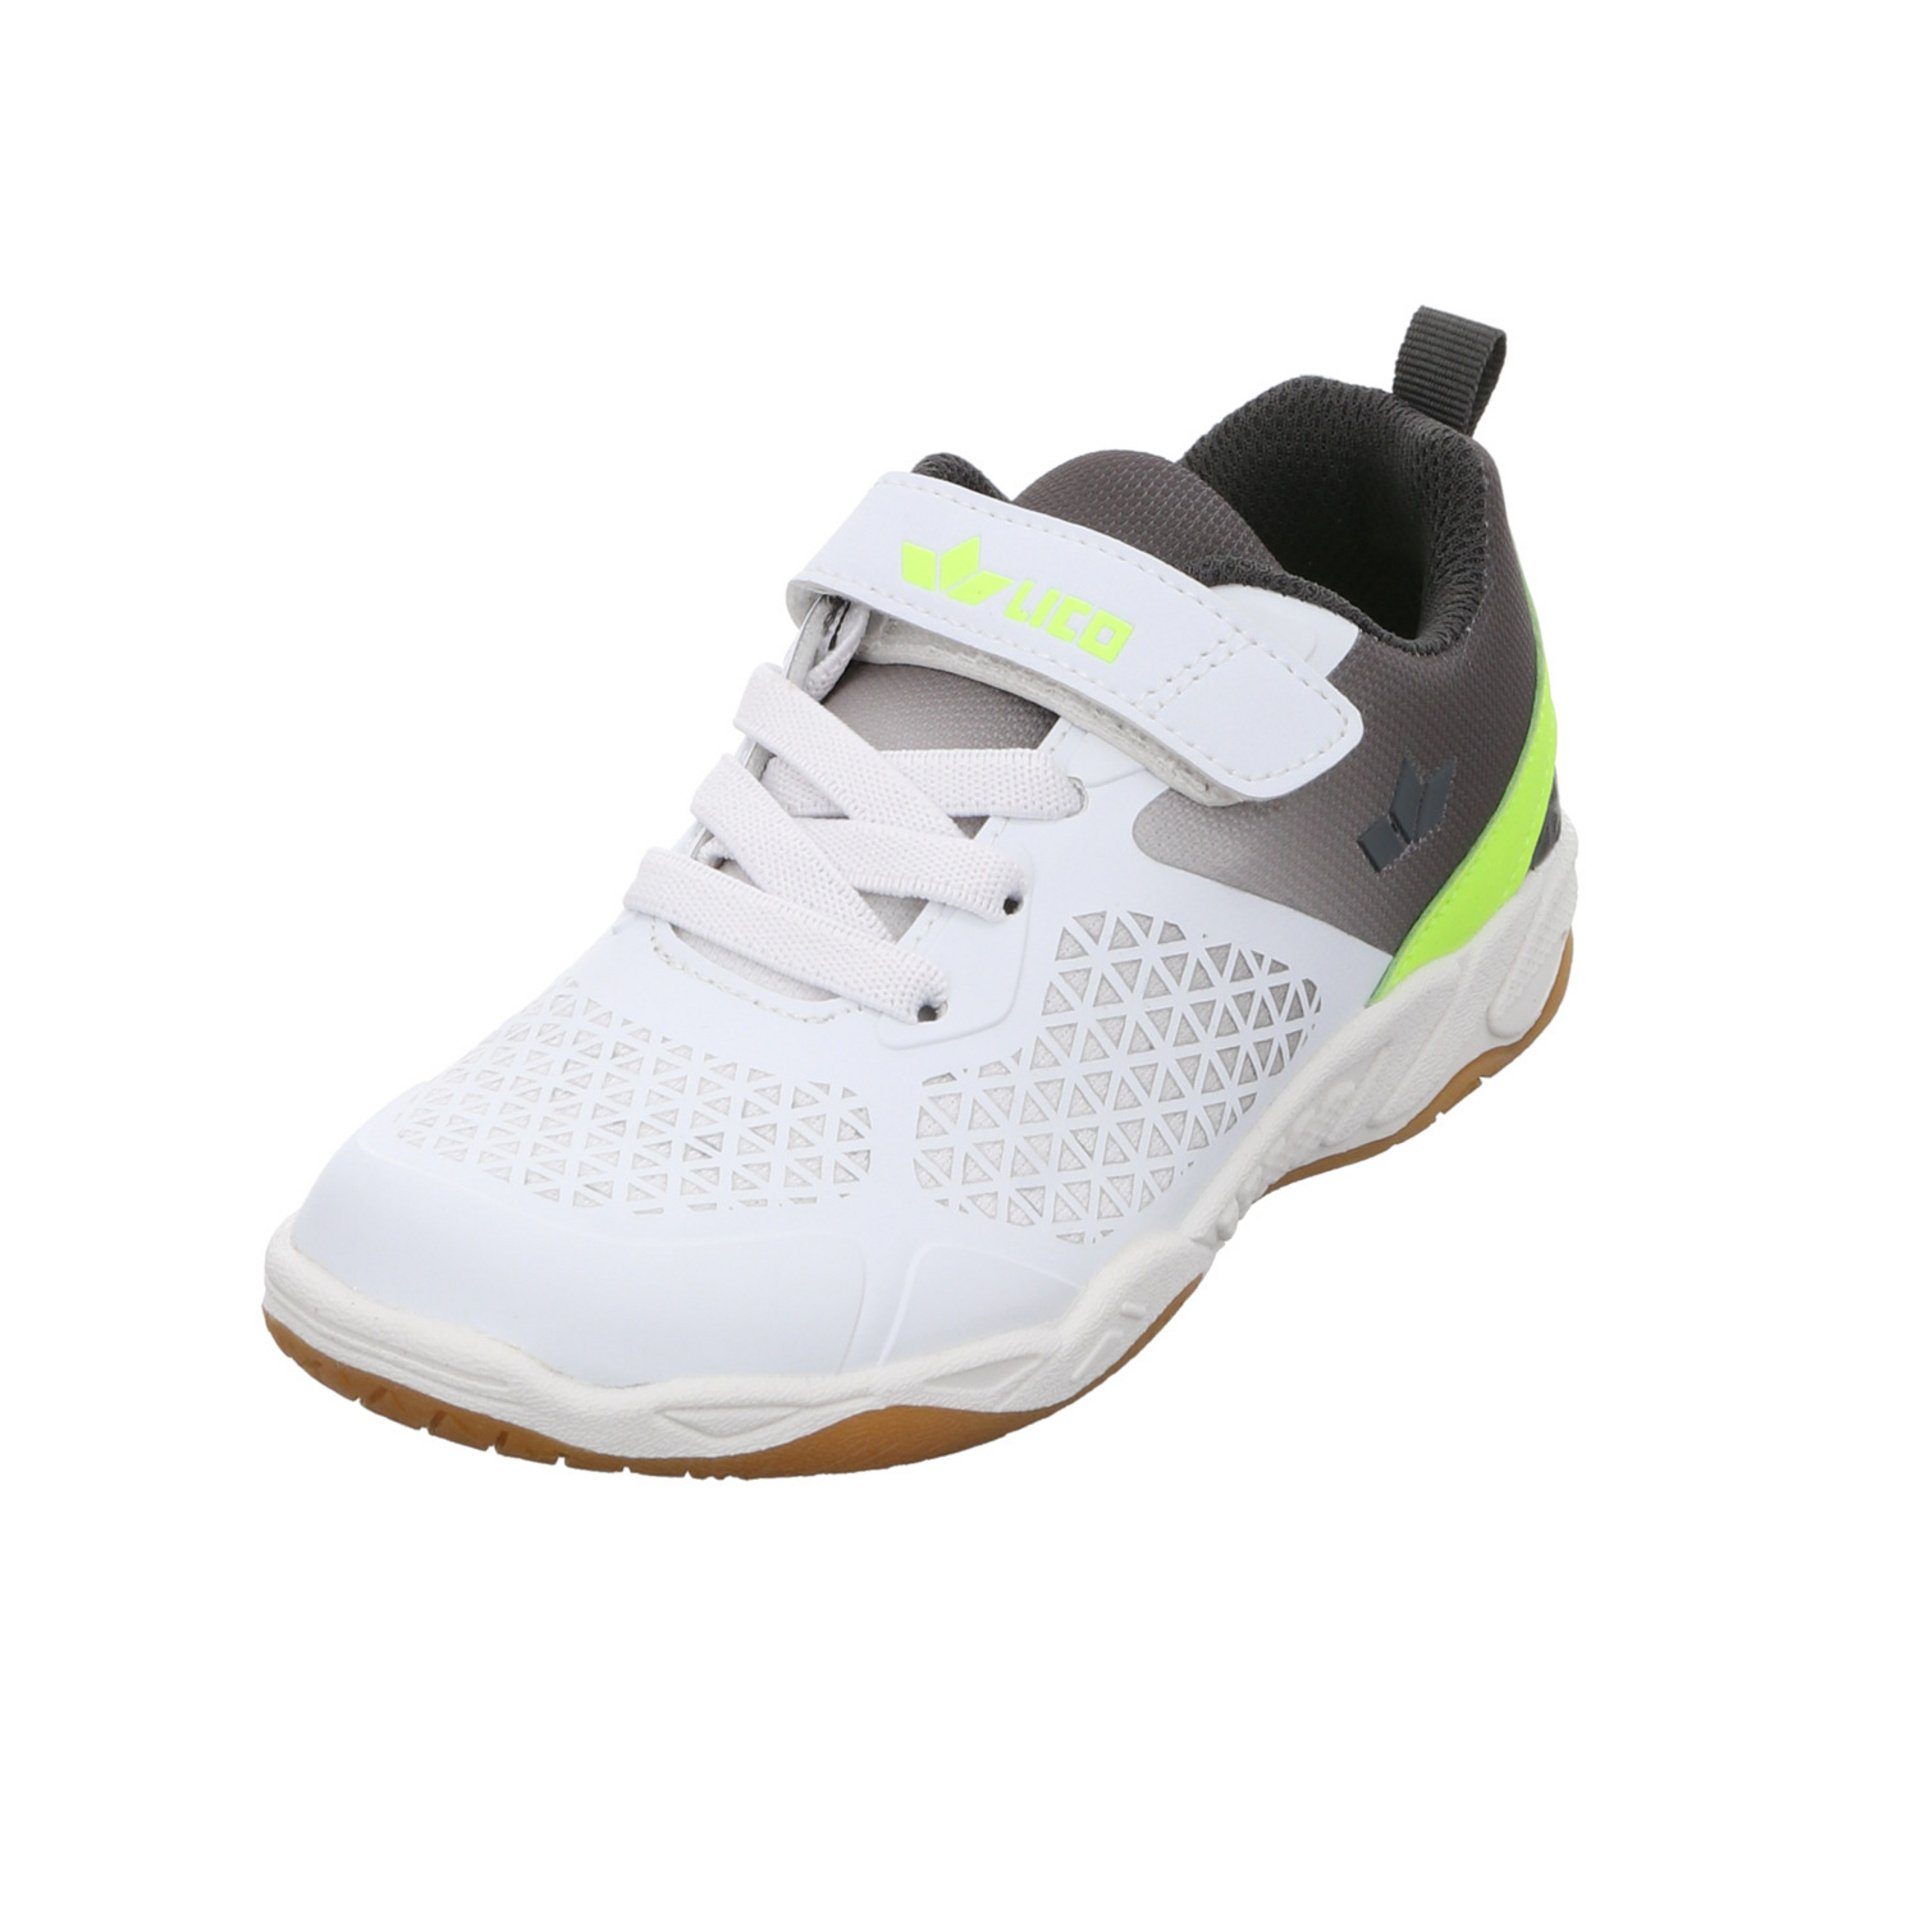 Sneaker Synthetikkombination weiss/grau/lemon Synthetikkombination Lico Kit gemustert VS Sneaker